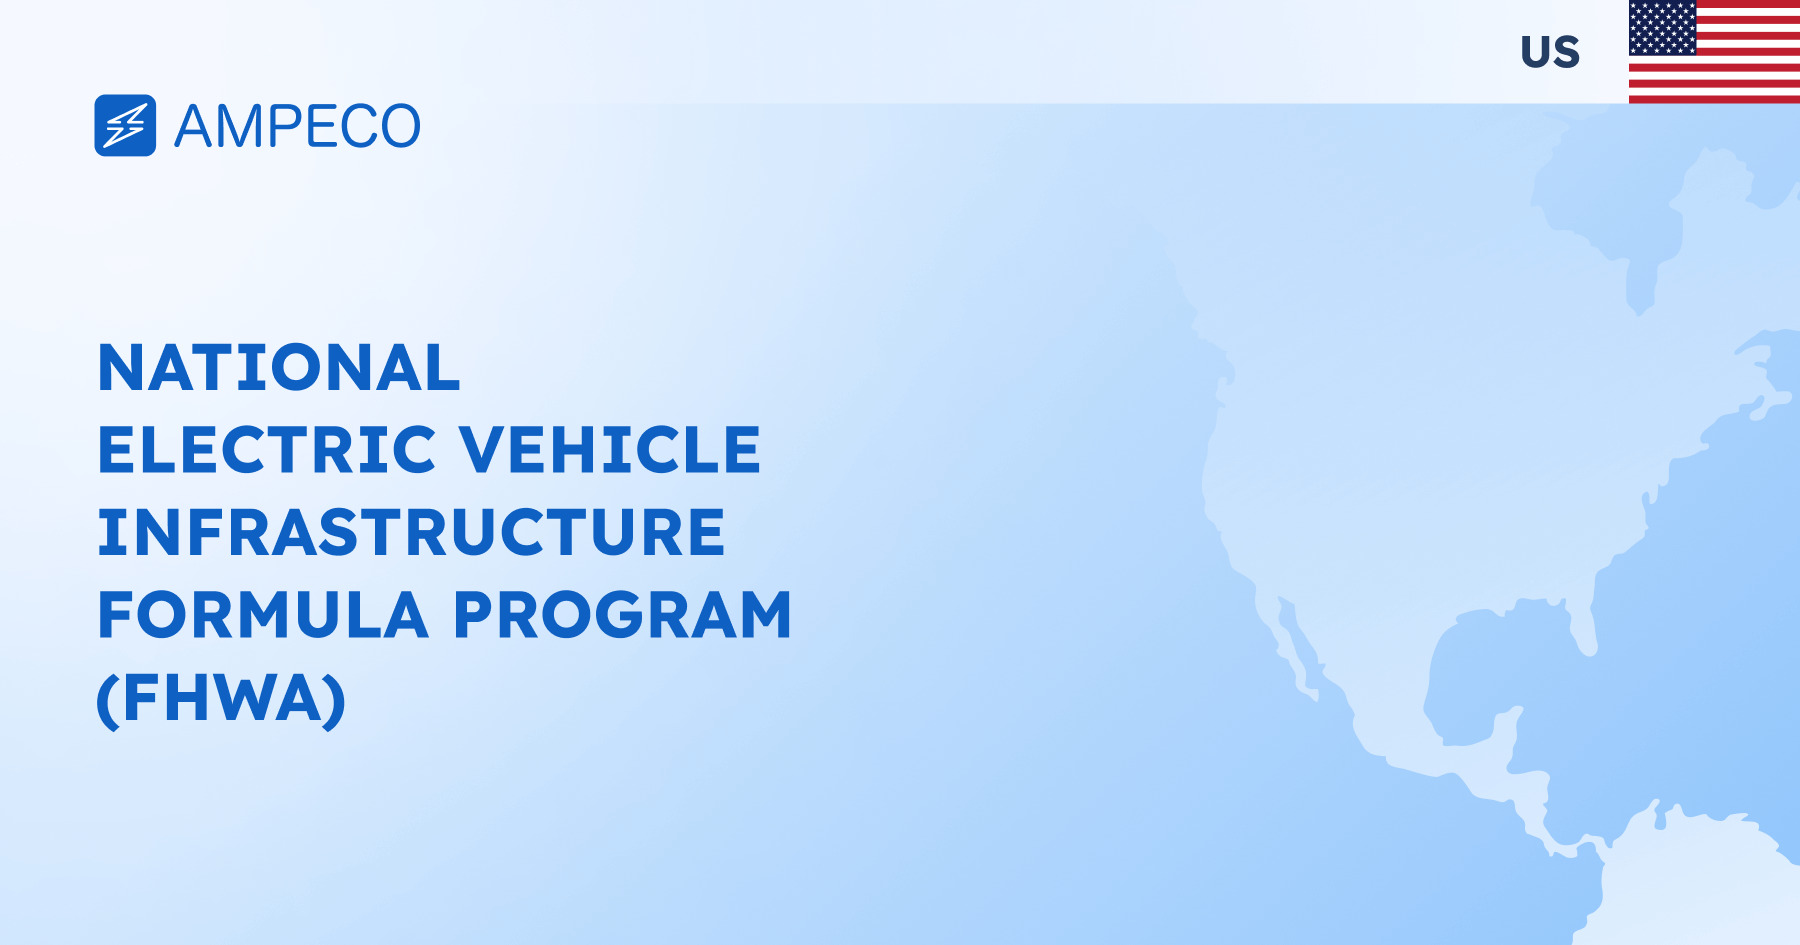 National Electric Vehicle Infrastructure Formula Program (FHWA) AMPECO